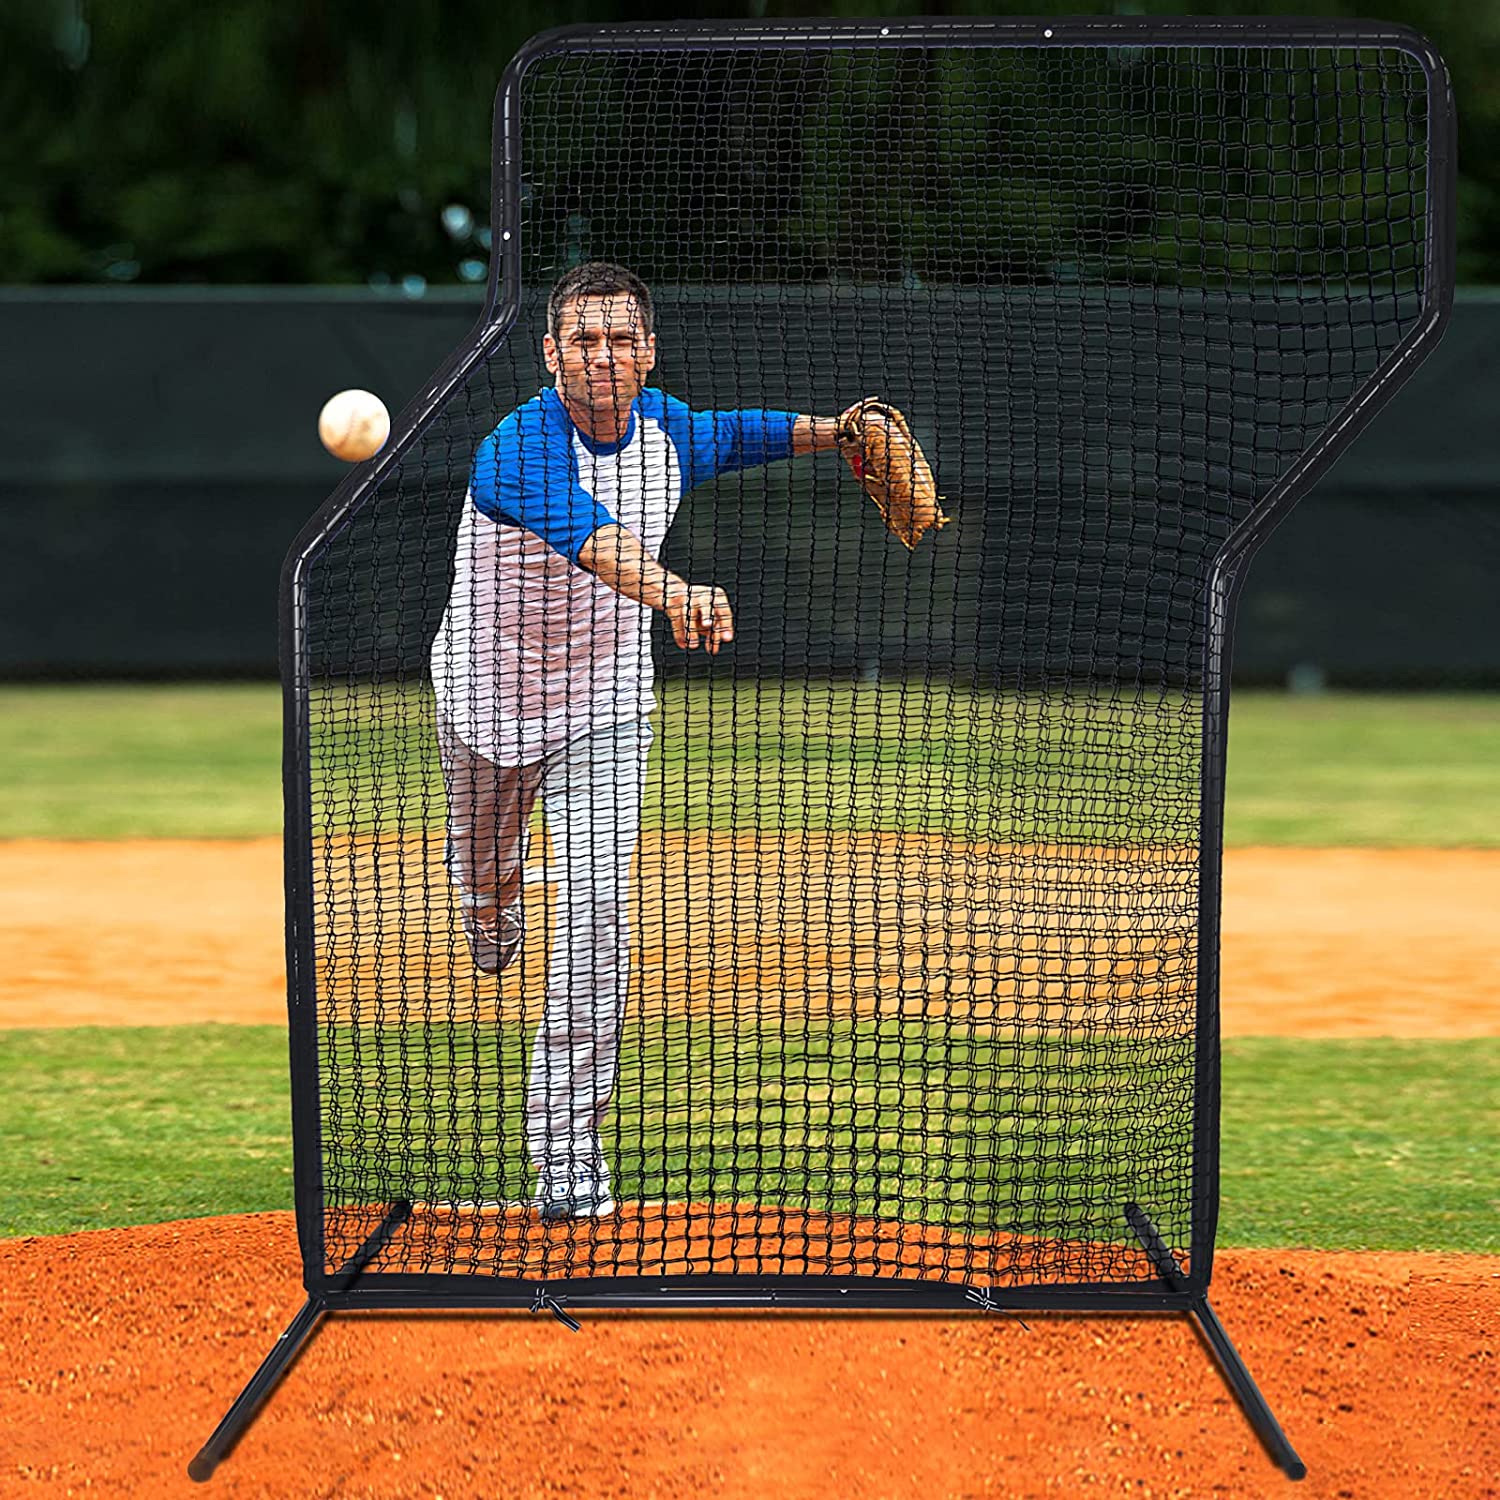 Pantalla de lanzador de béisbol Pantalla de lanzamiento de softbol Pantalla protectora de béisbol | Pantalla Z de 7'x5' | negro profesional | deportes galileo